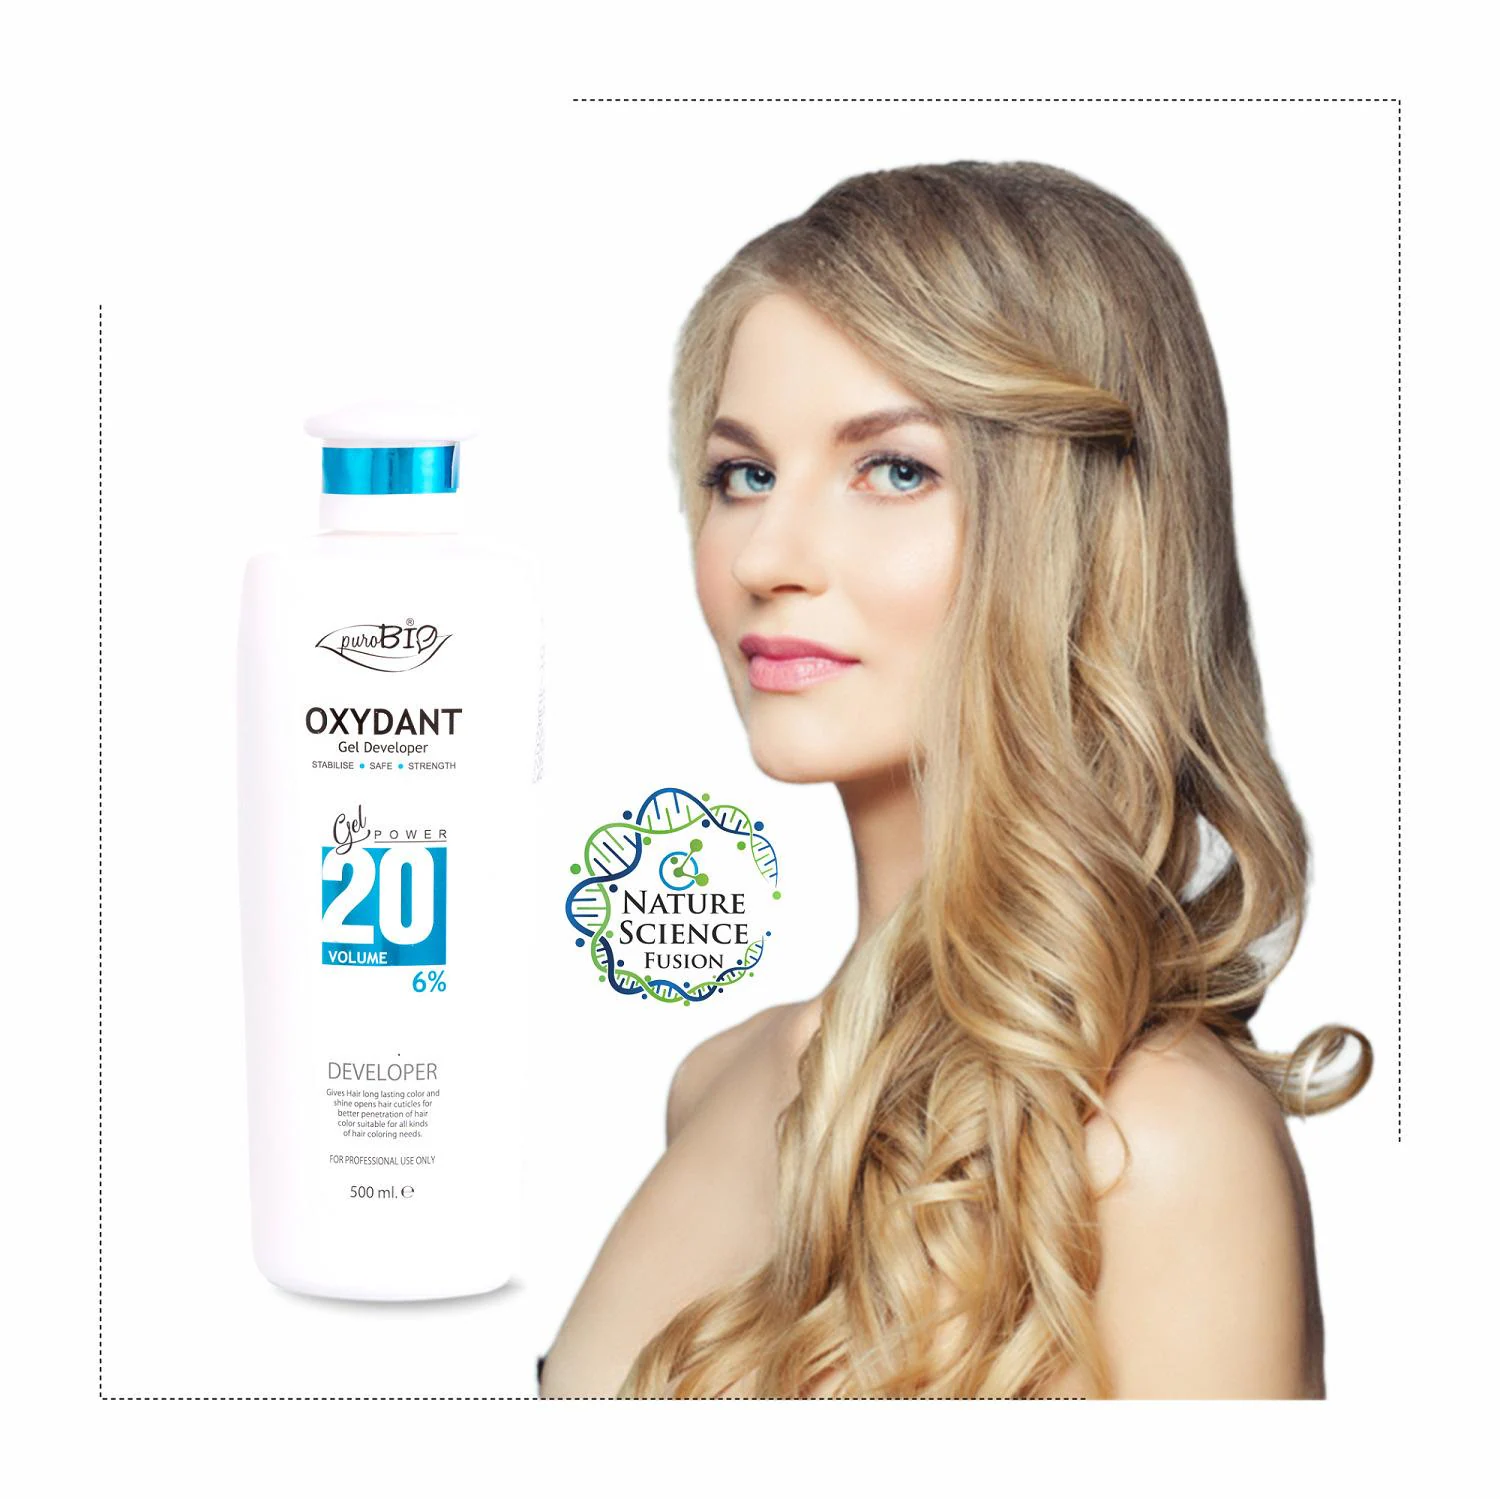 Purobio Oxydant Gel Developer 20 volume 6% hair colour cream Man & Woman  500 ml - JioMart